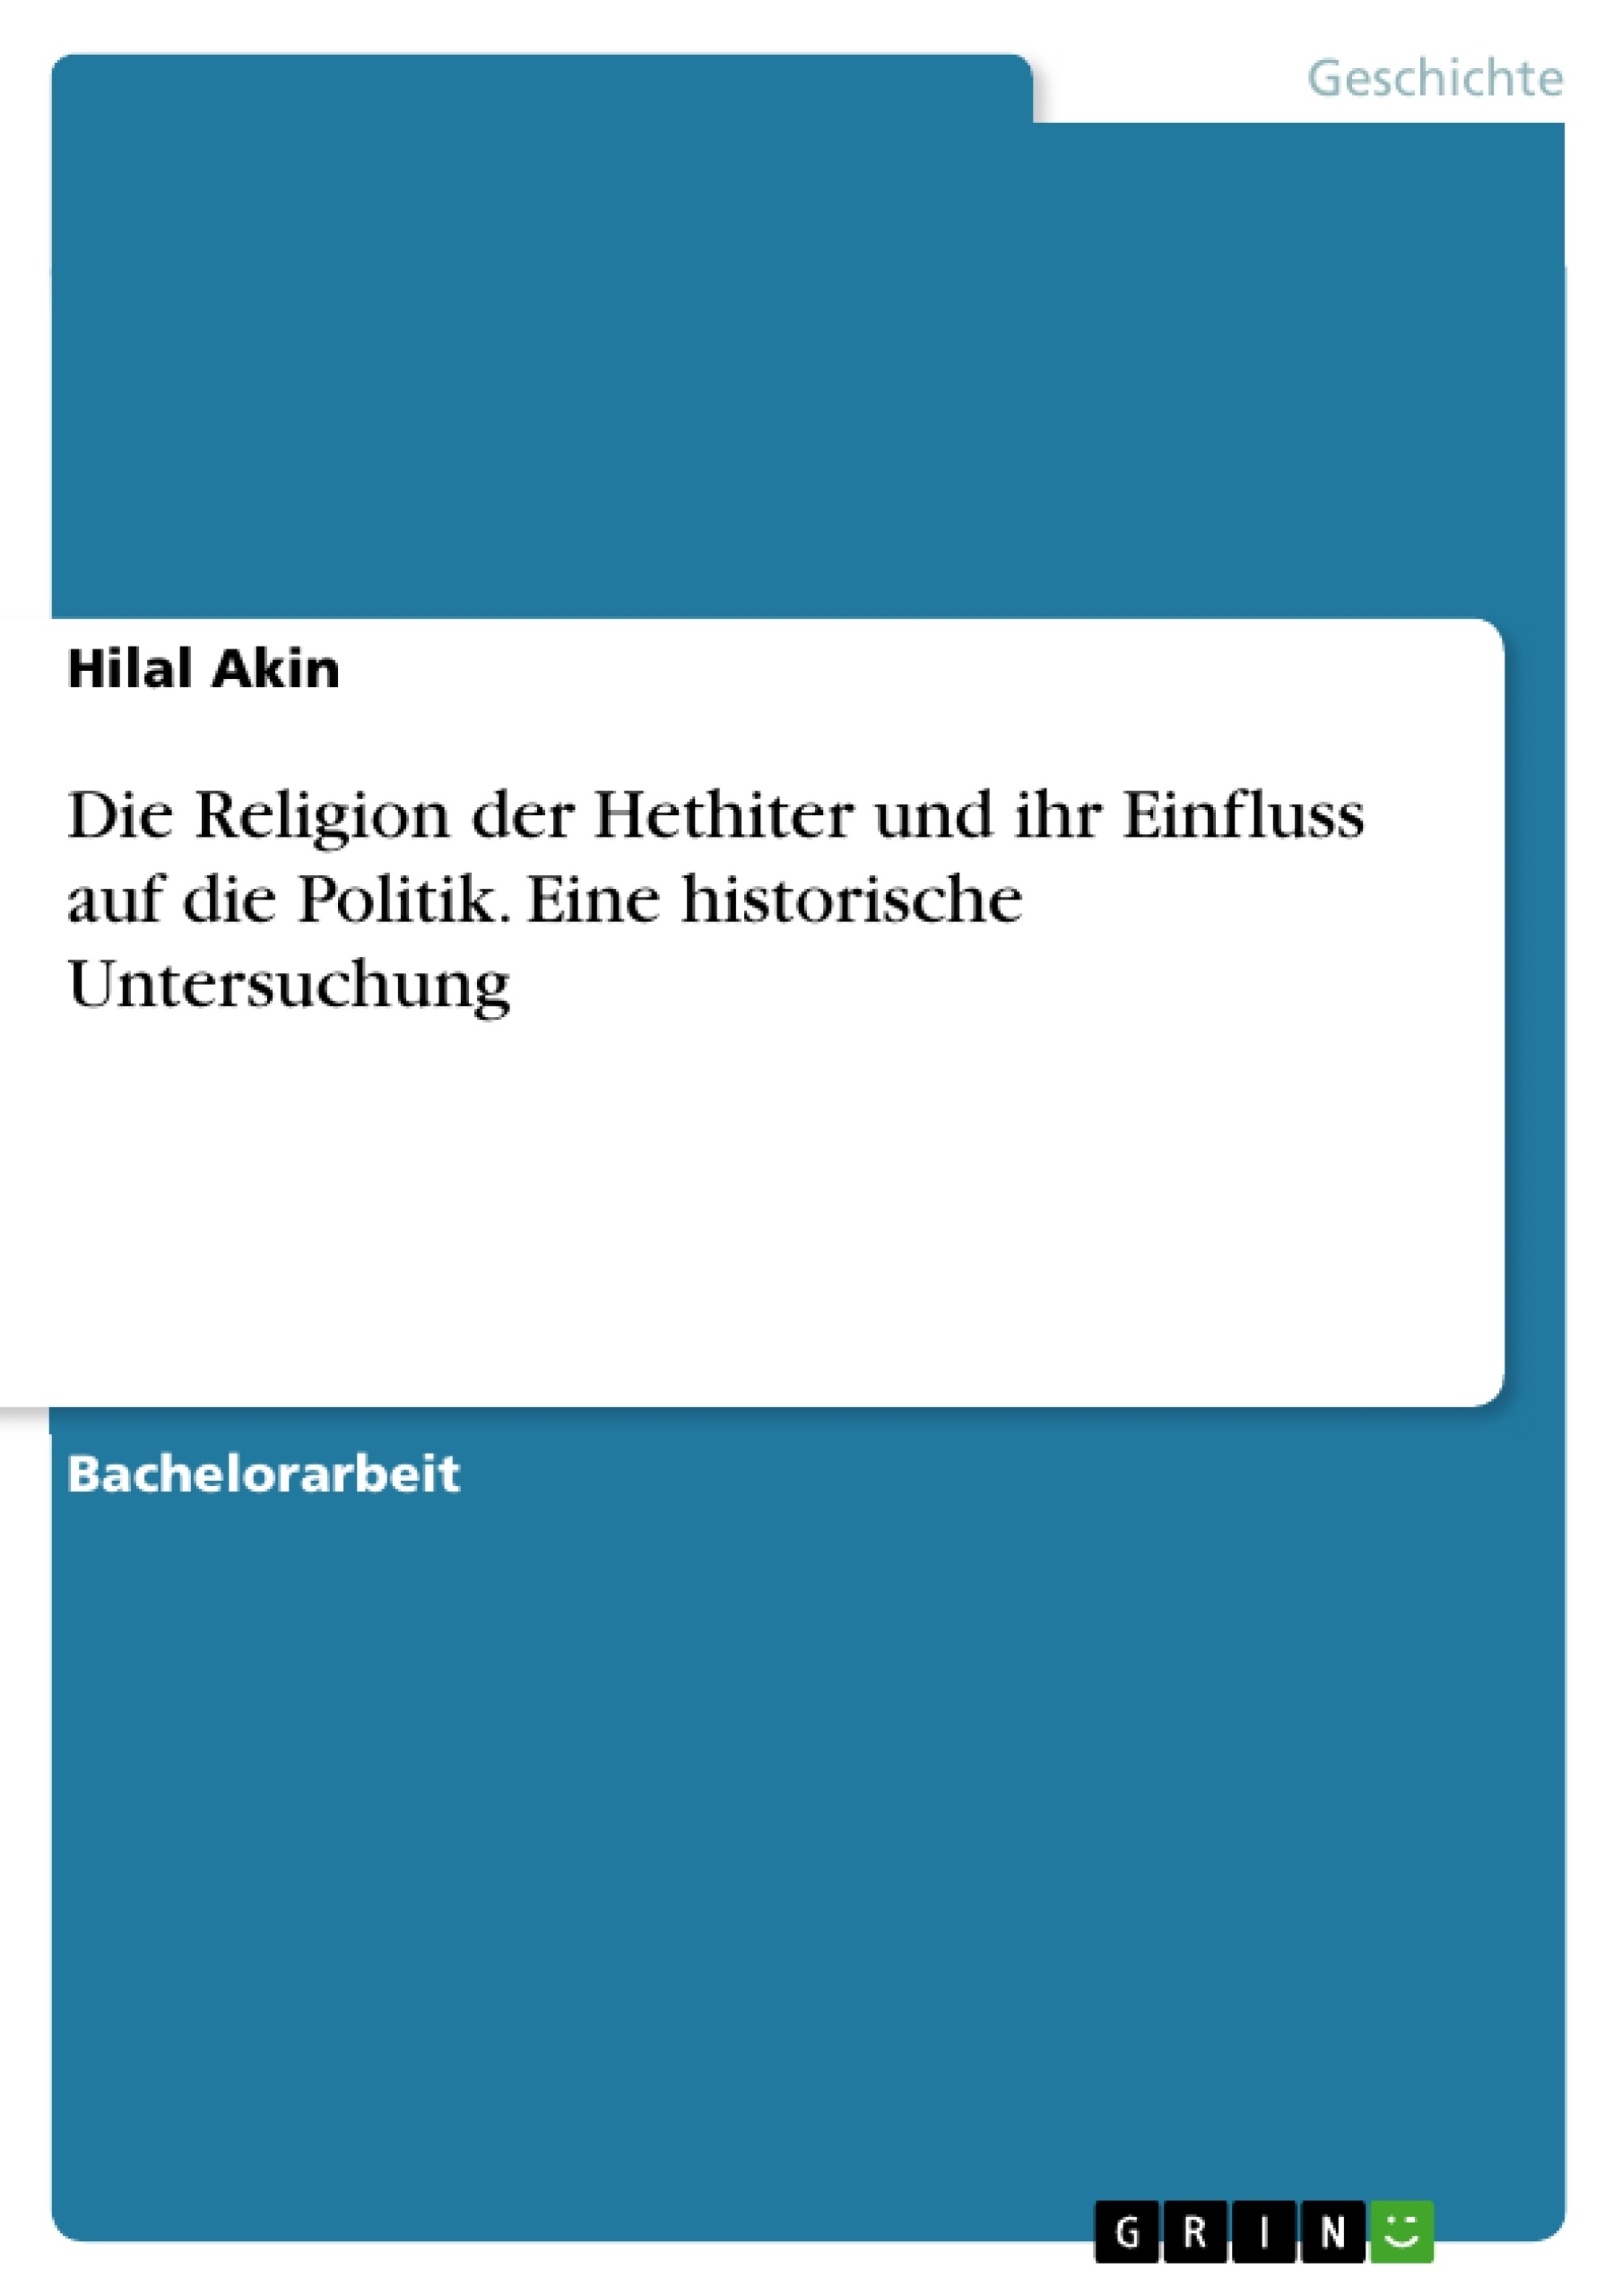 Title: Die Religion der Hethiter und ihr Einfluss auf die Politik. Eine historische Untersuchung